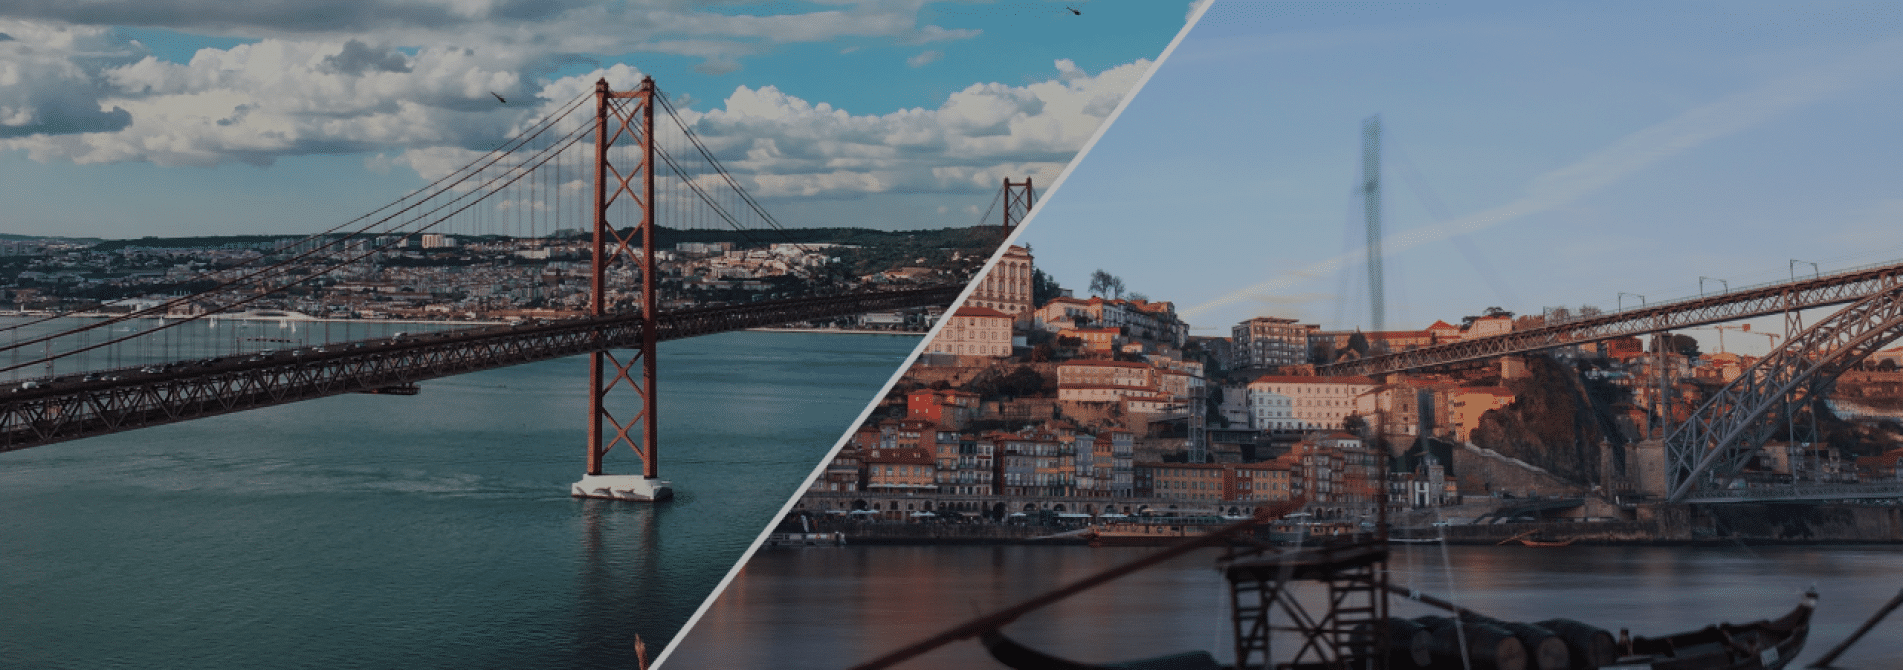 LisboaxPorto_experience